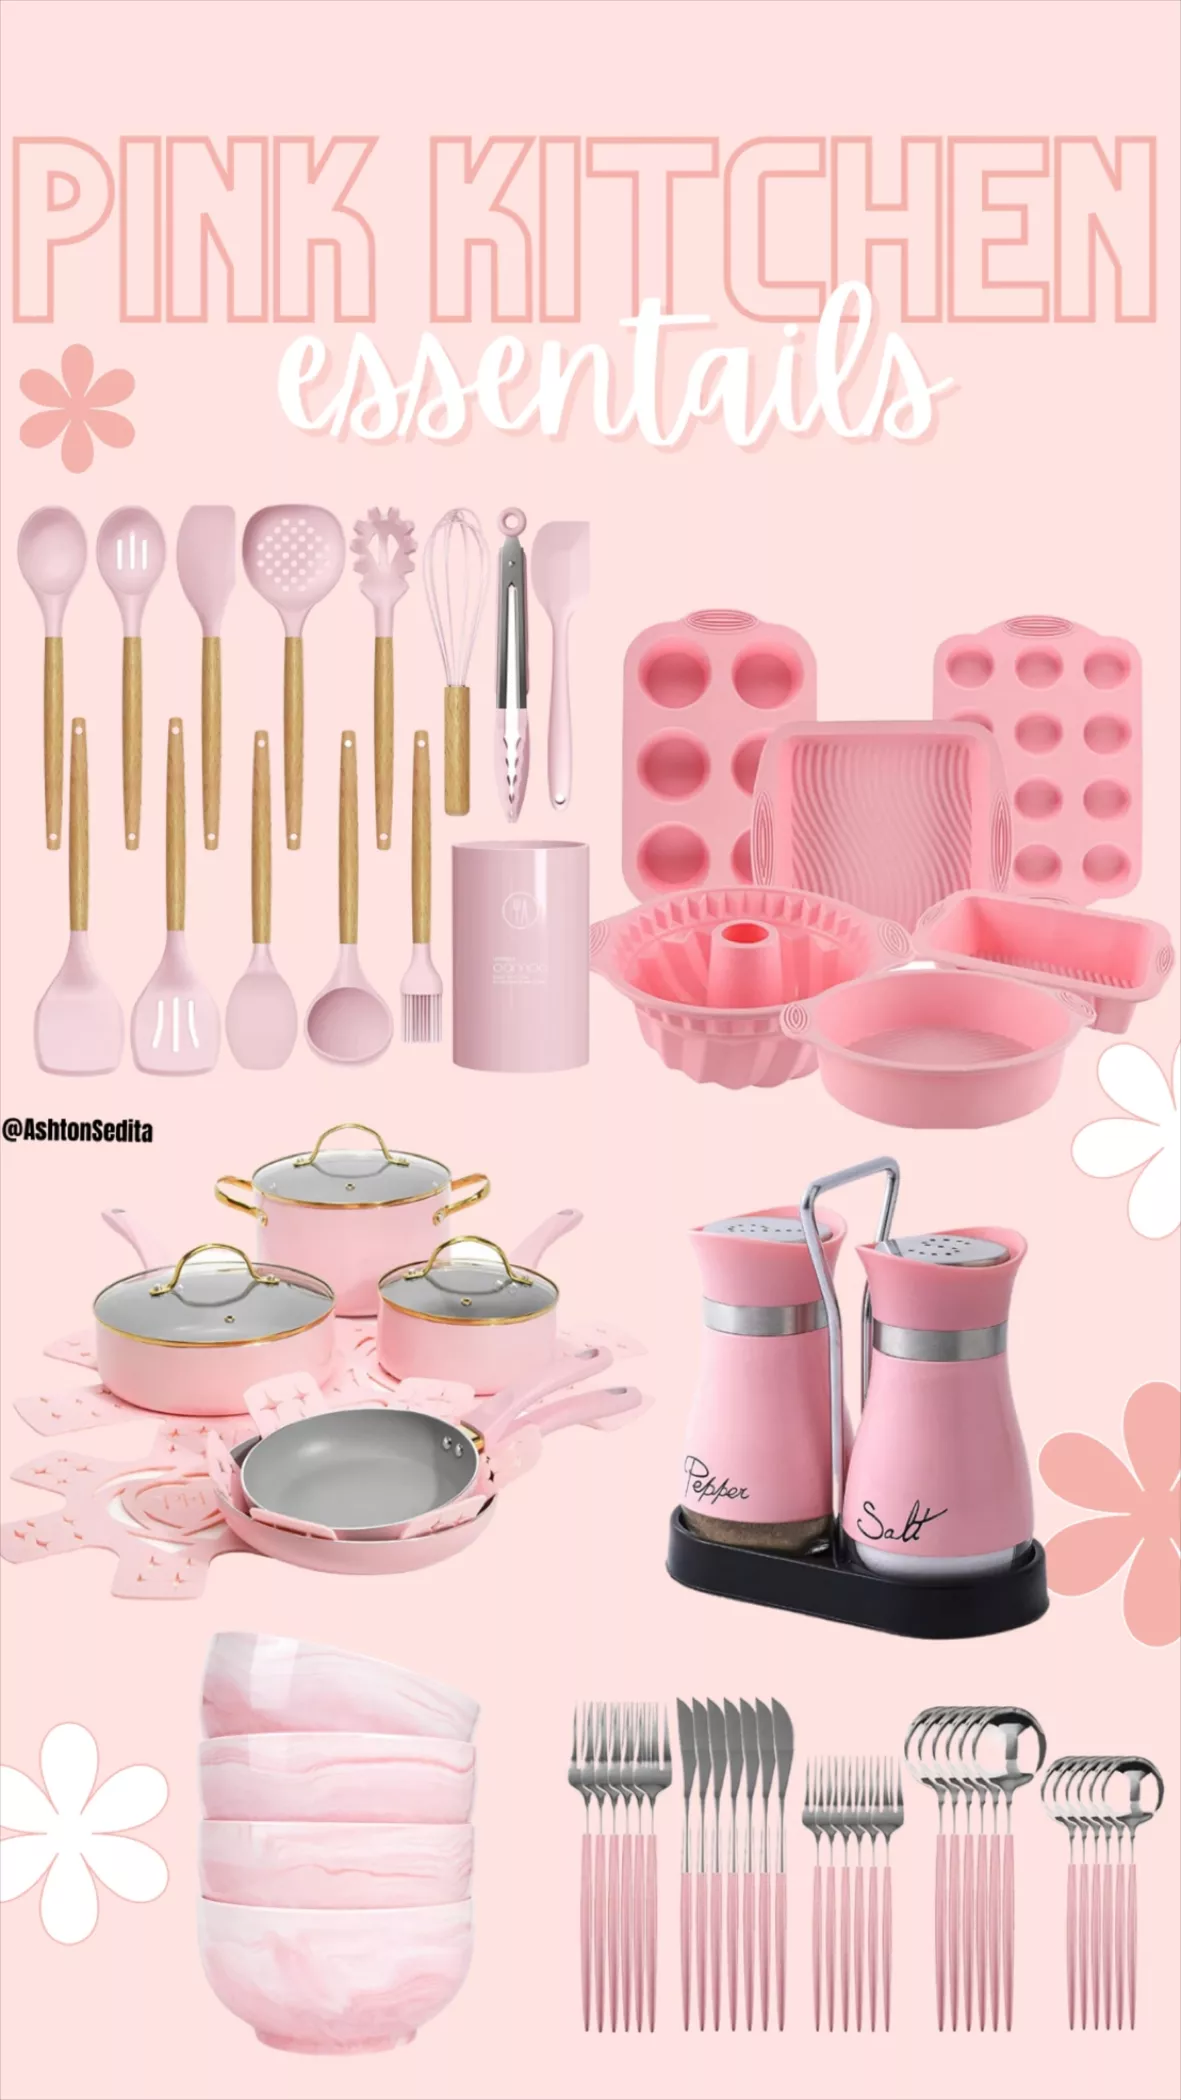 Pink Kitchenware